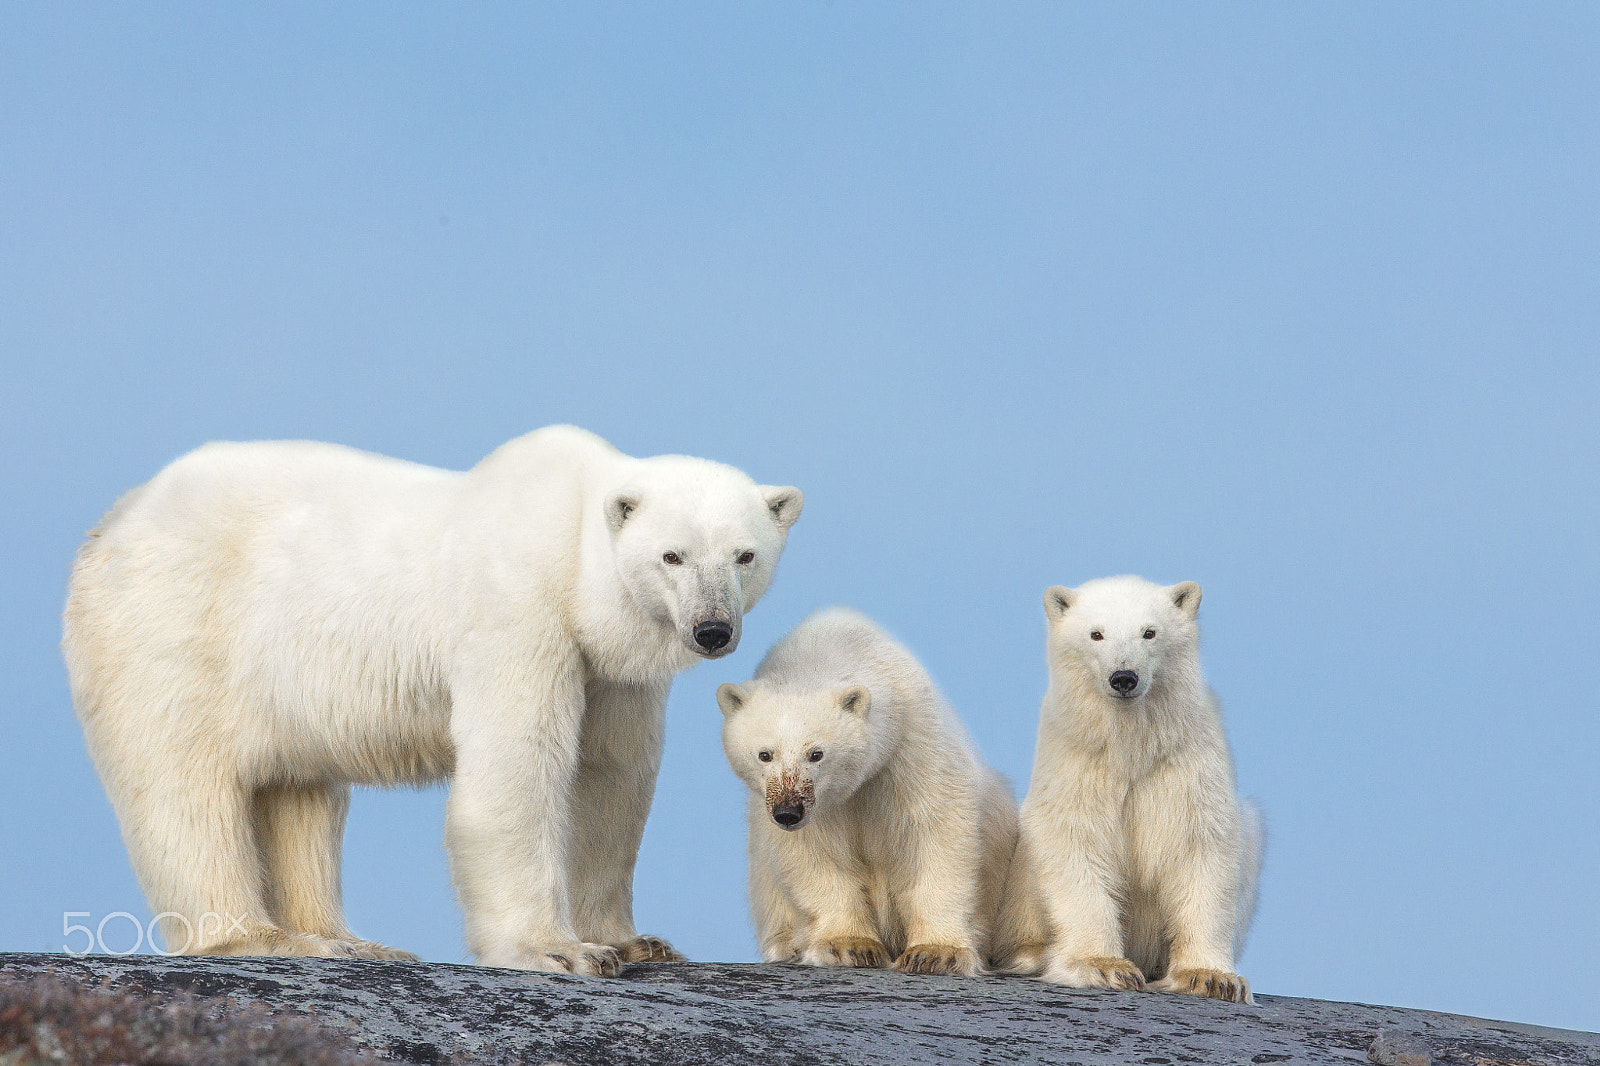 Canon EOS-1D X sample photo. Polar bear with cubs on rocks photography